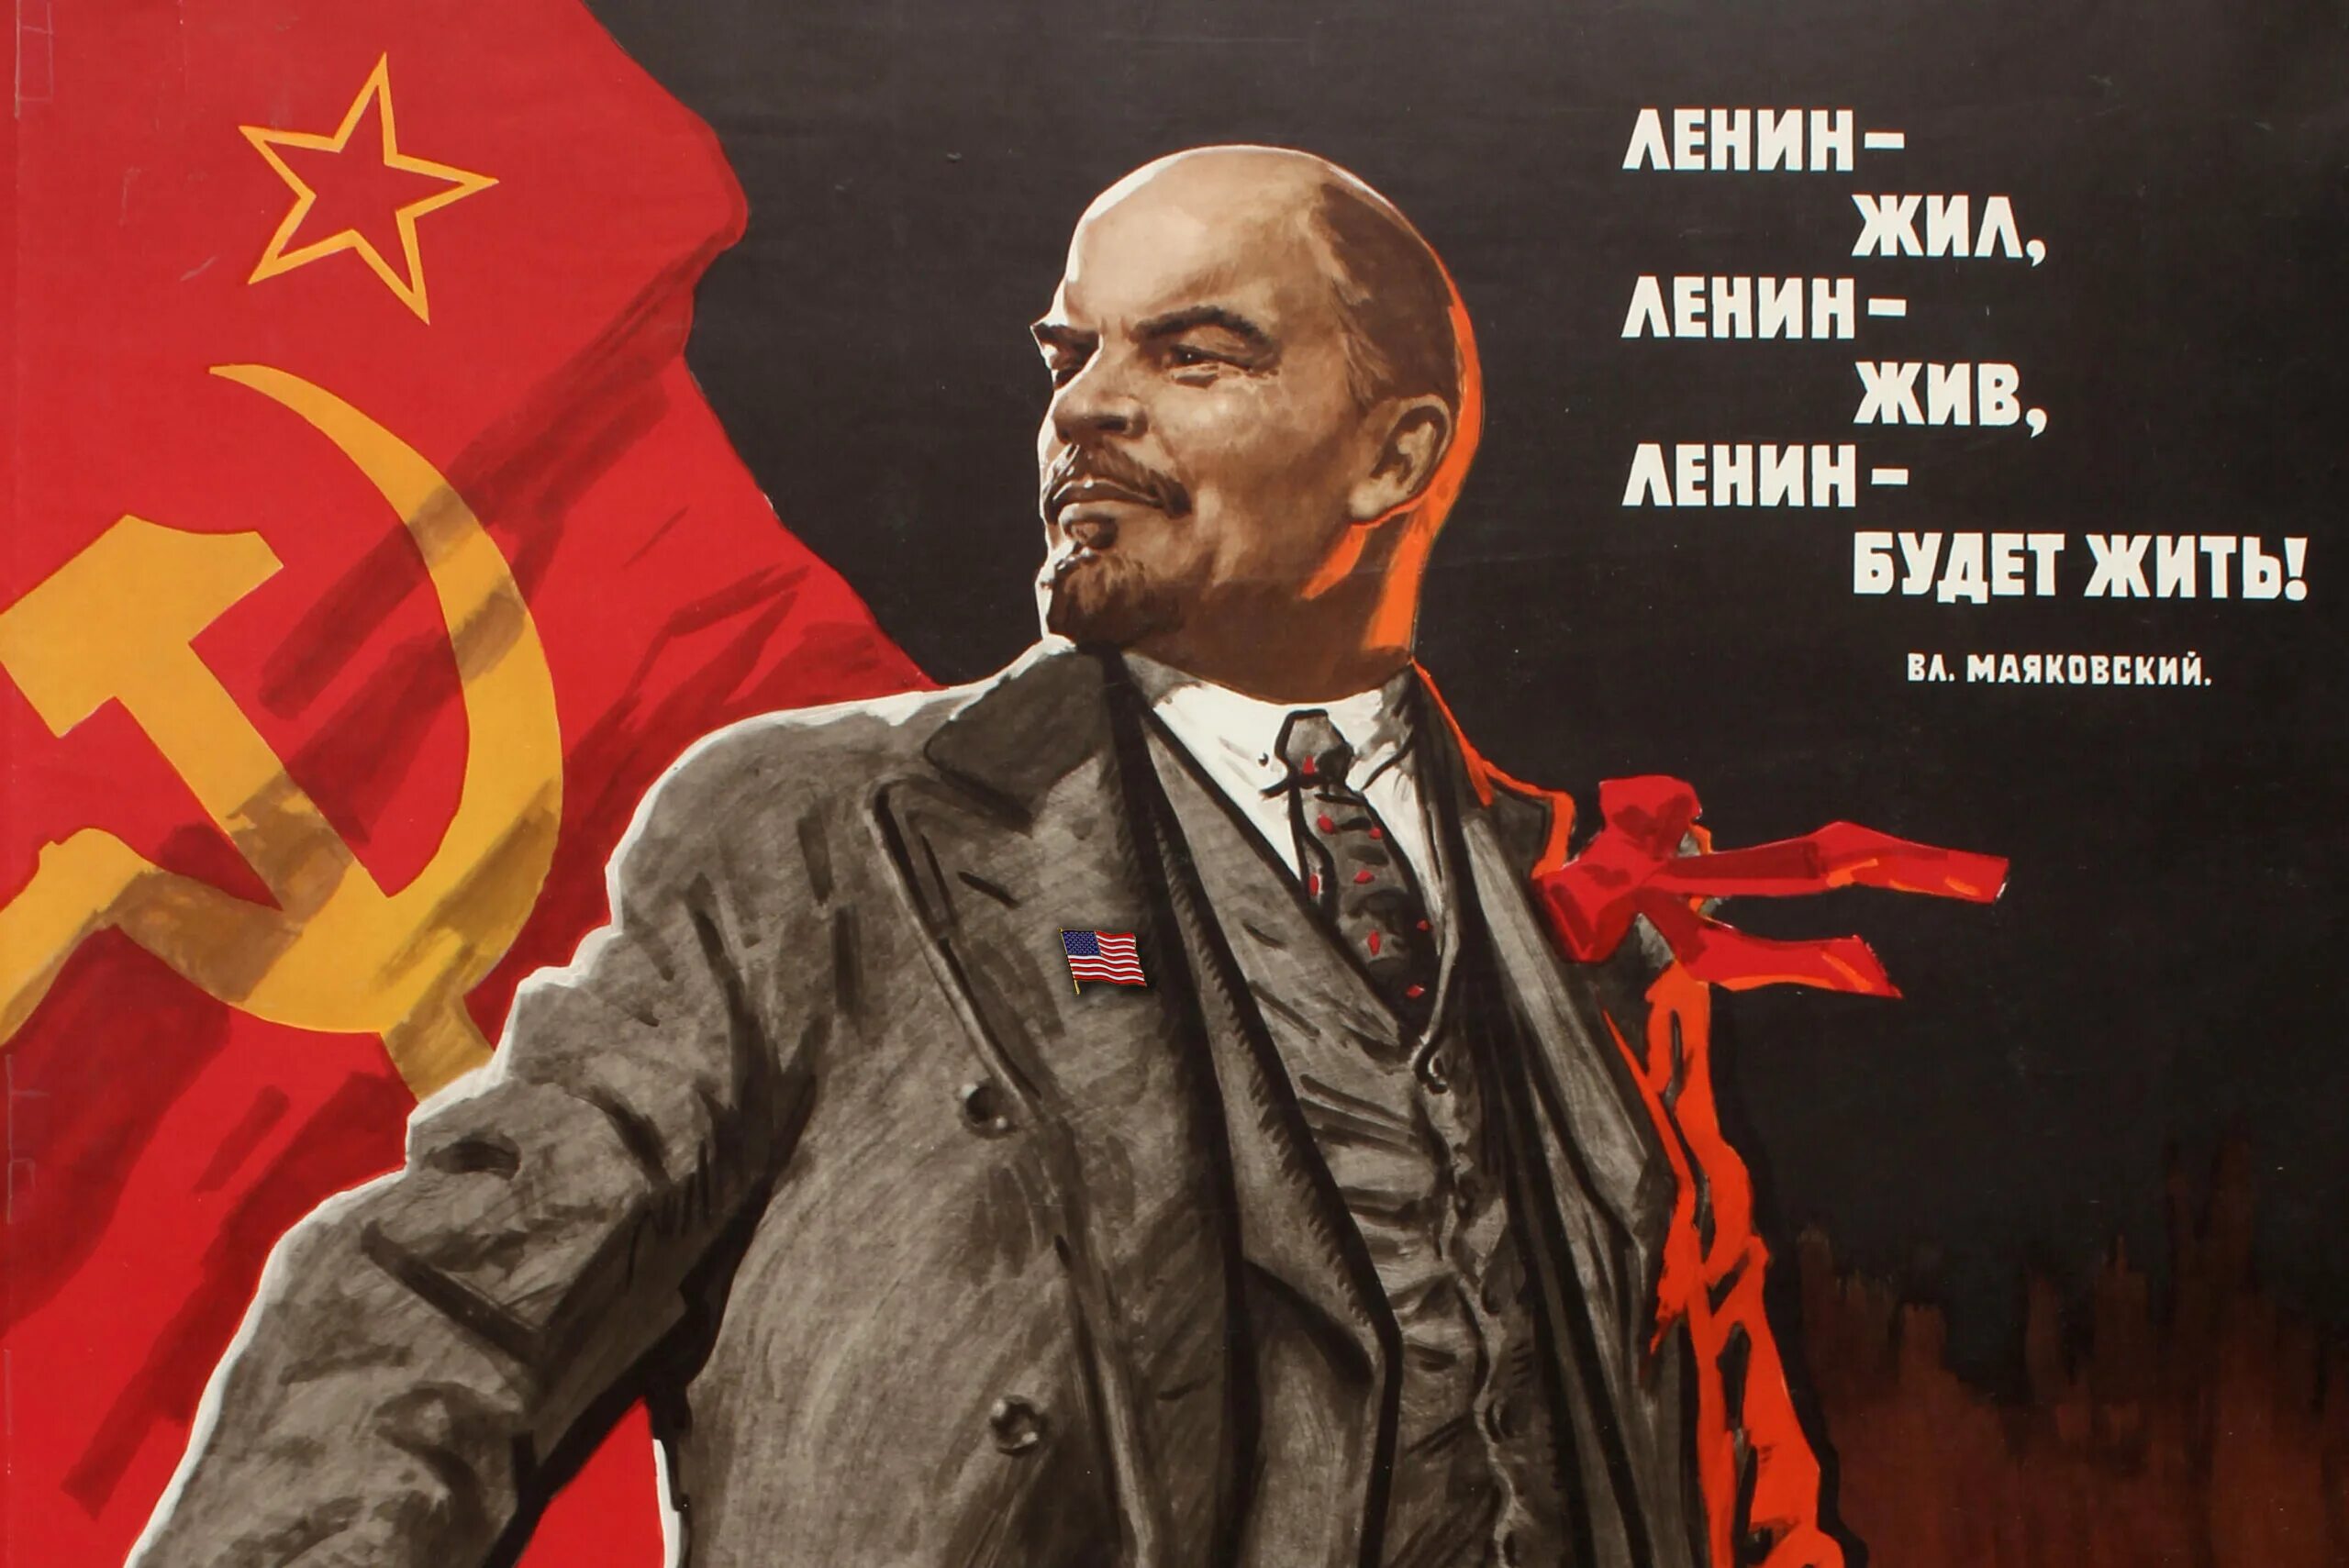 Плакат Ленин жил Ленин жив Ленин будет жить. Ленин жил Ленин жив Ленин будет. Ленин плакат.